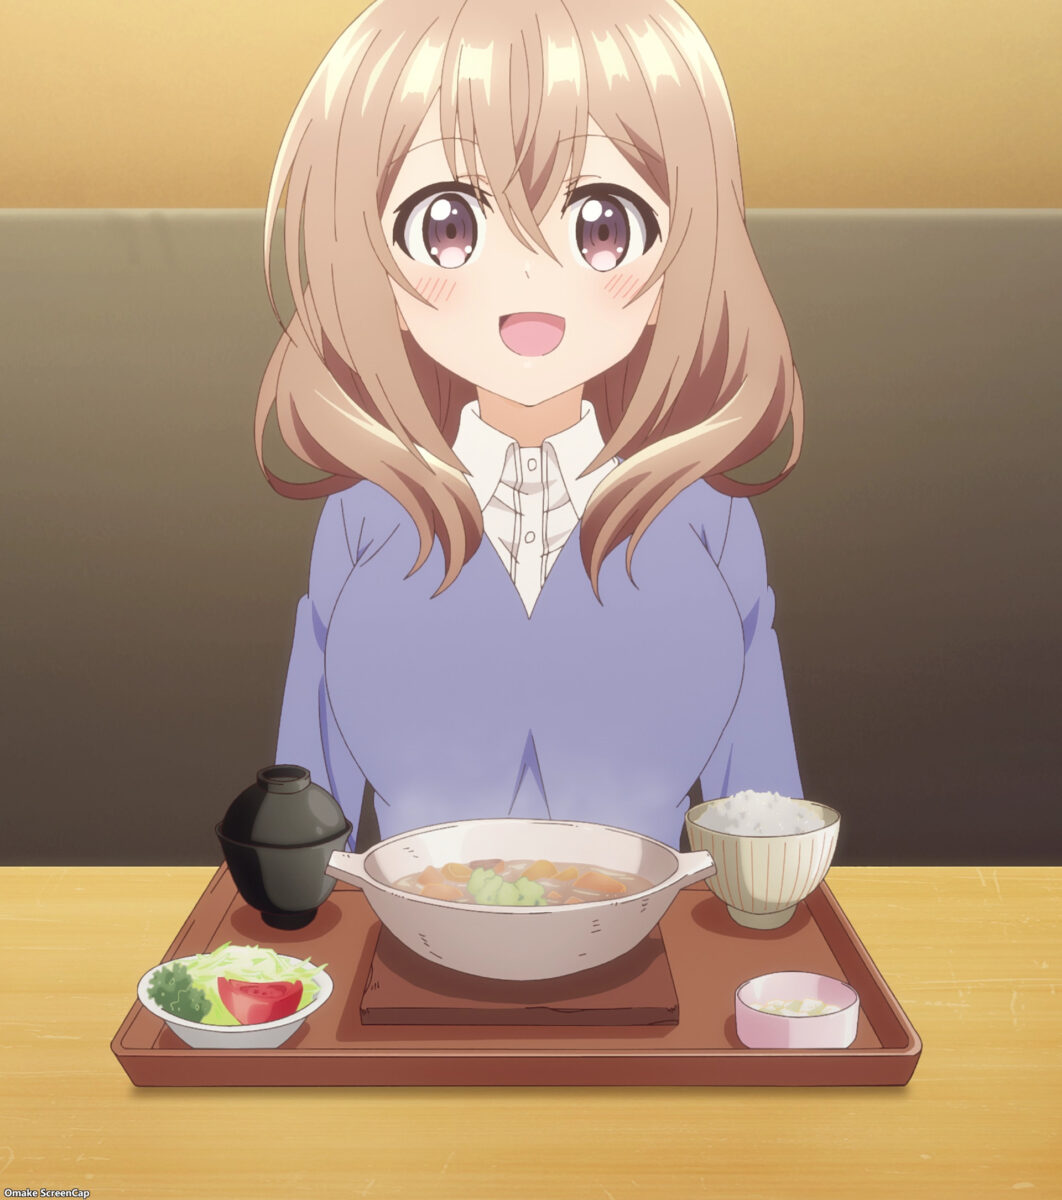 My Tiny Senpai Episode 1 Shiori Ready To Eat